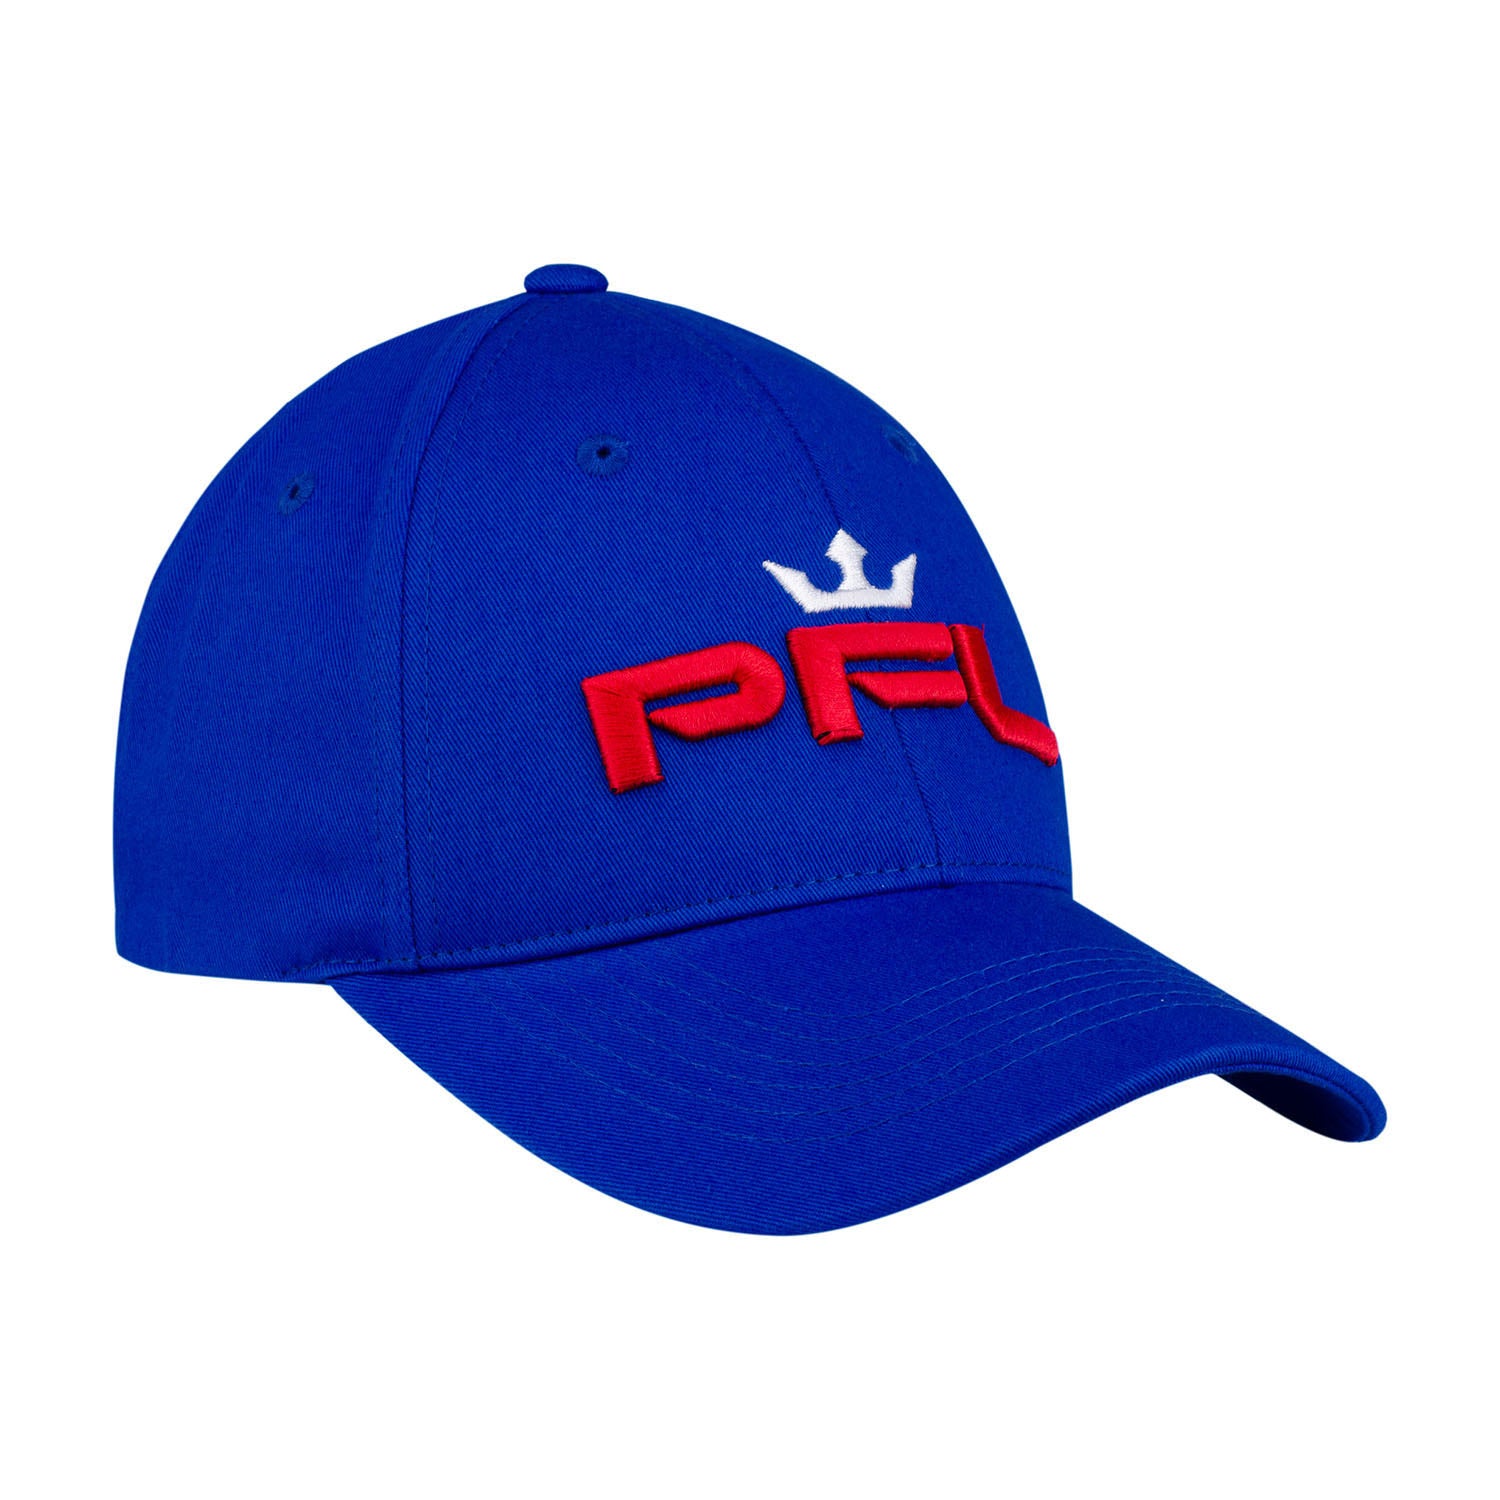 PFL Walkout Hat in Blue - Left Side View